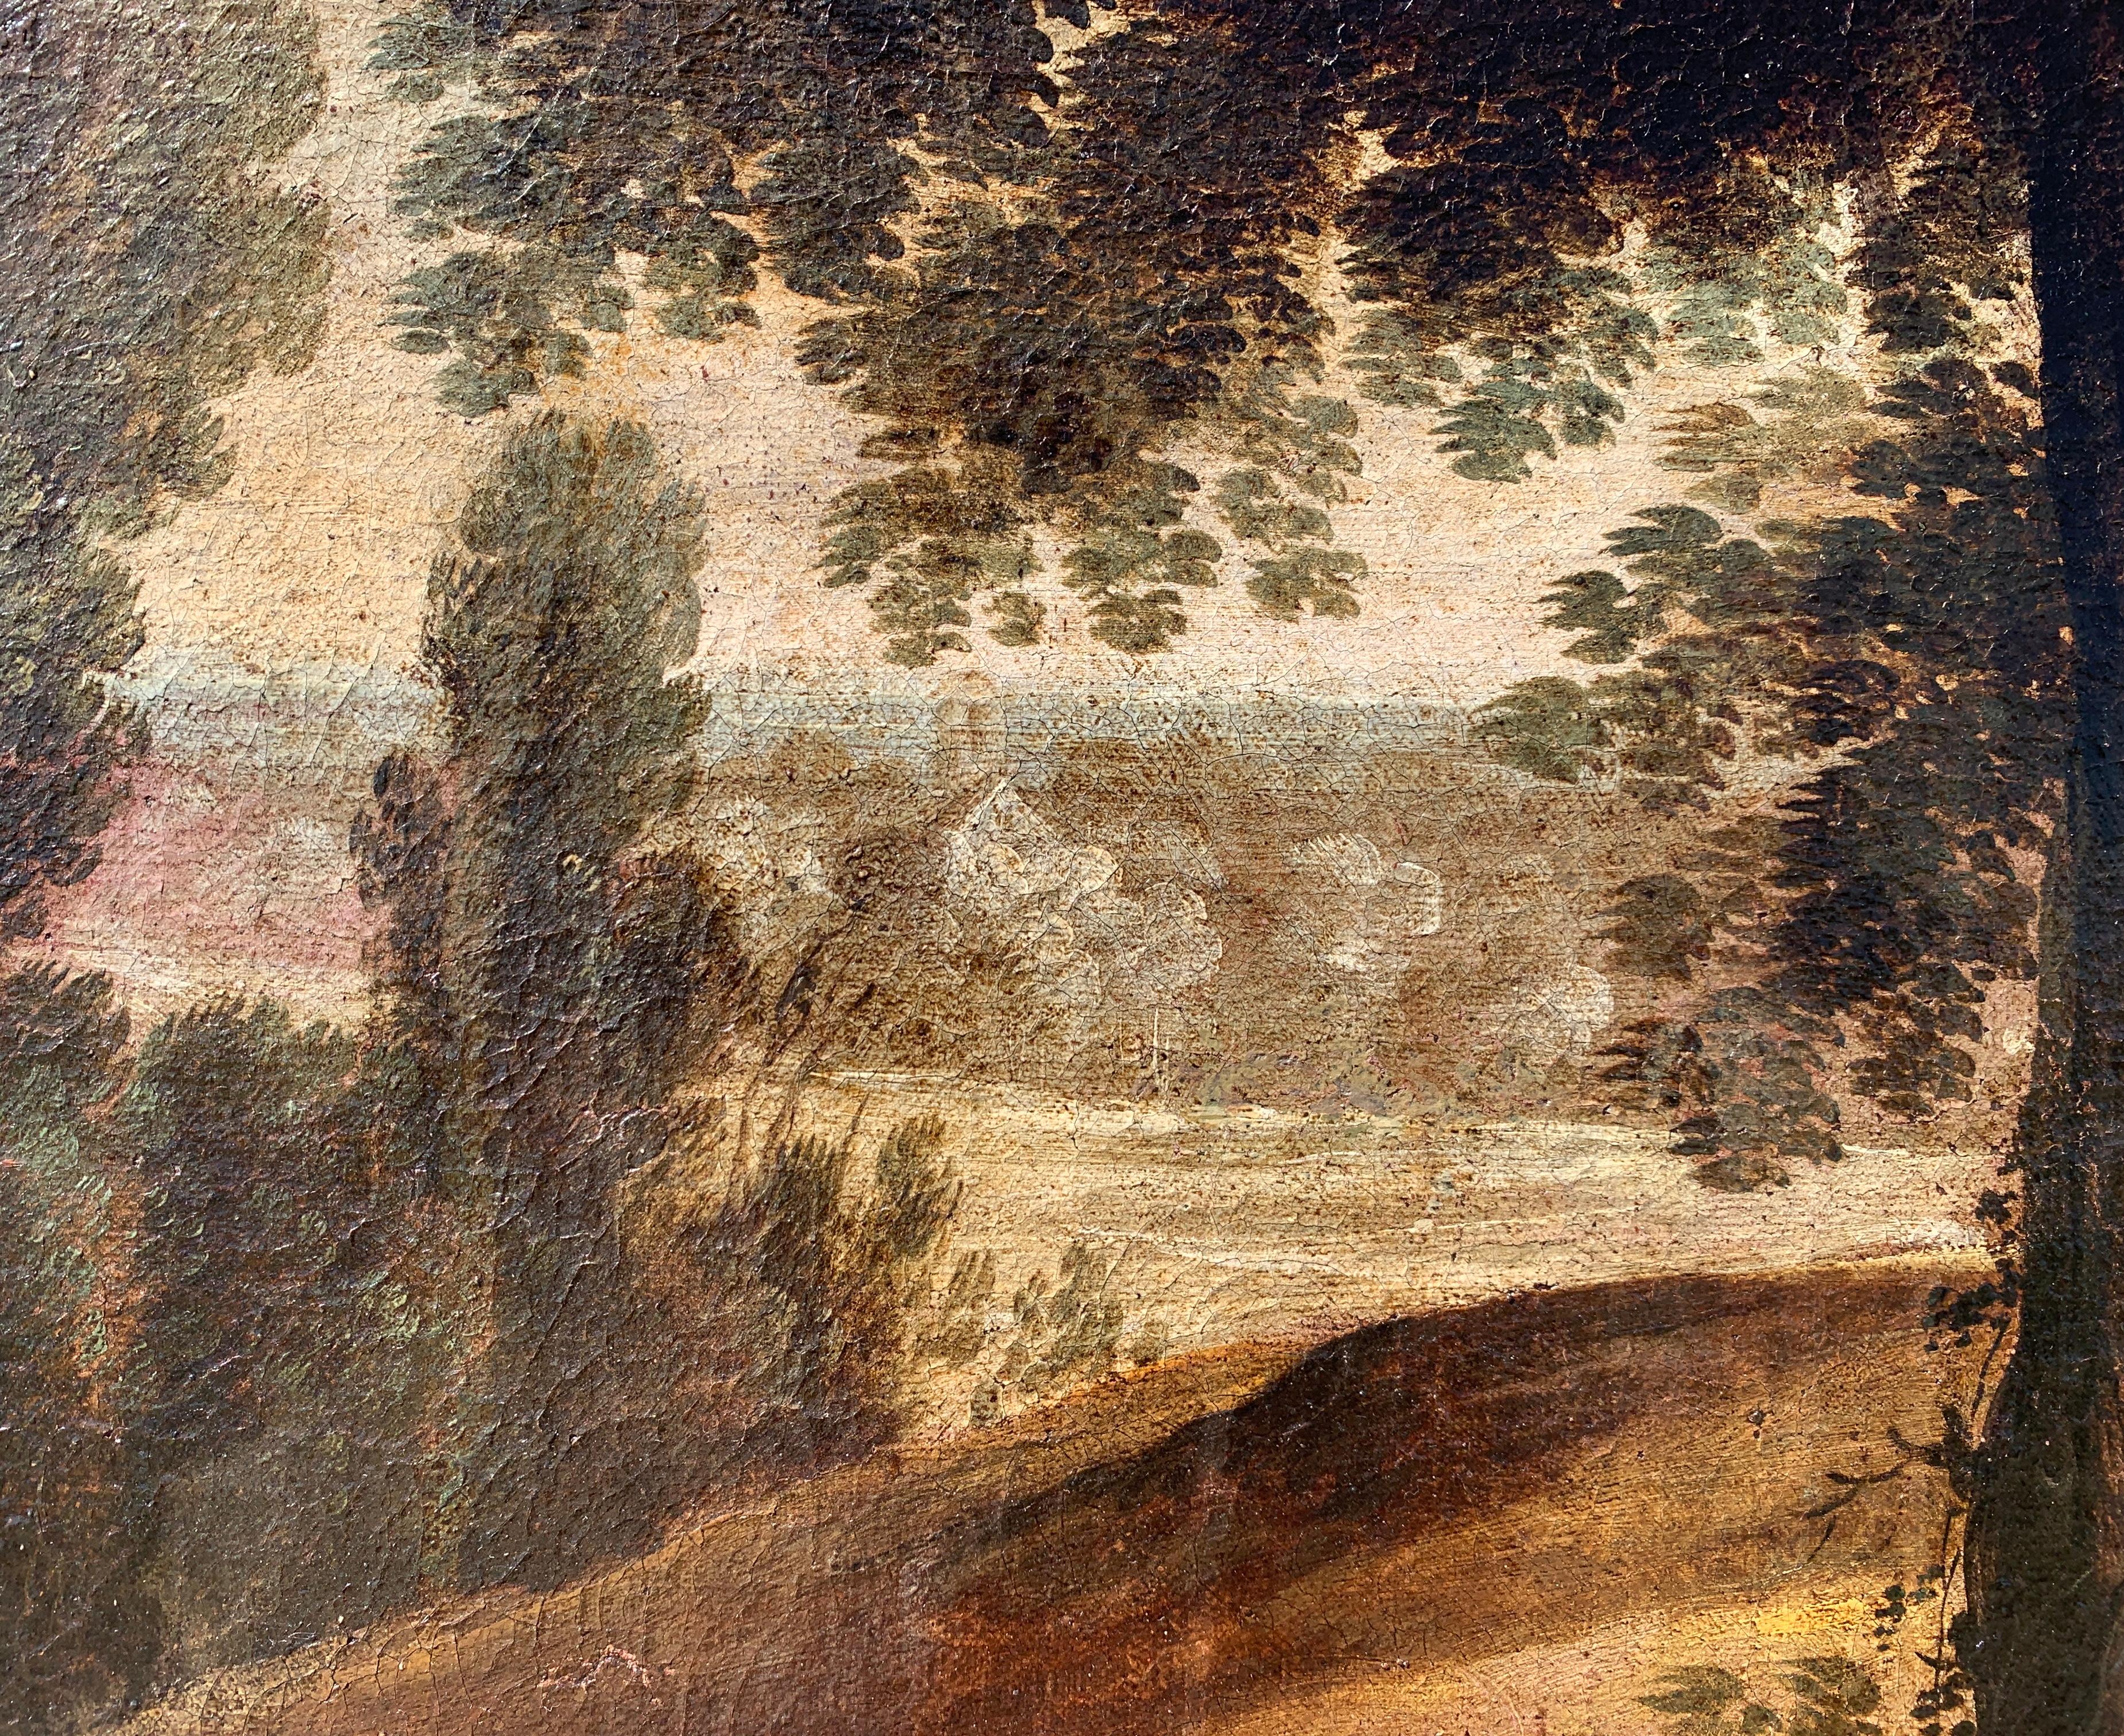 Suiveur de Paul Bril (Anvers 1554 - Rome 1626) - Paysage fluvial avec personnages.

81 x 99 cm sans cadre, 94 x 112 cm avec cadre.

Peinture à l'huile ancienne sur toile, dans un cadre en bois doré.

État des lieux : Toile doublée. Bon état de